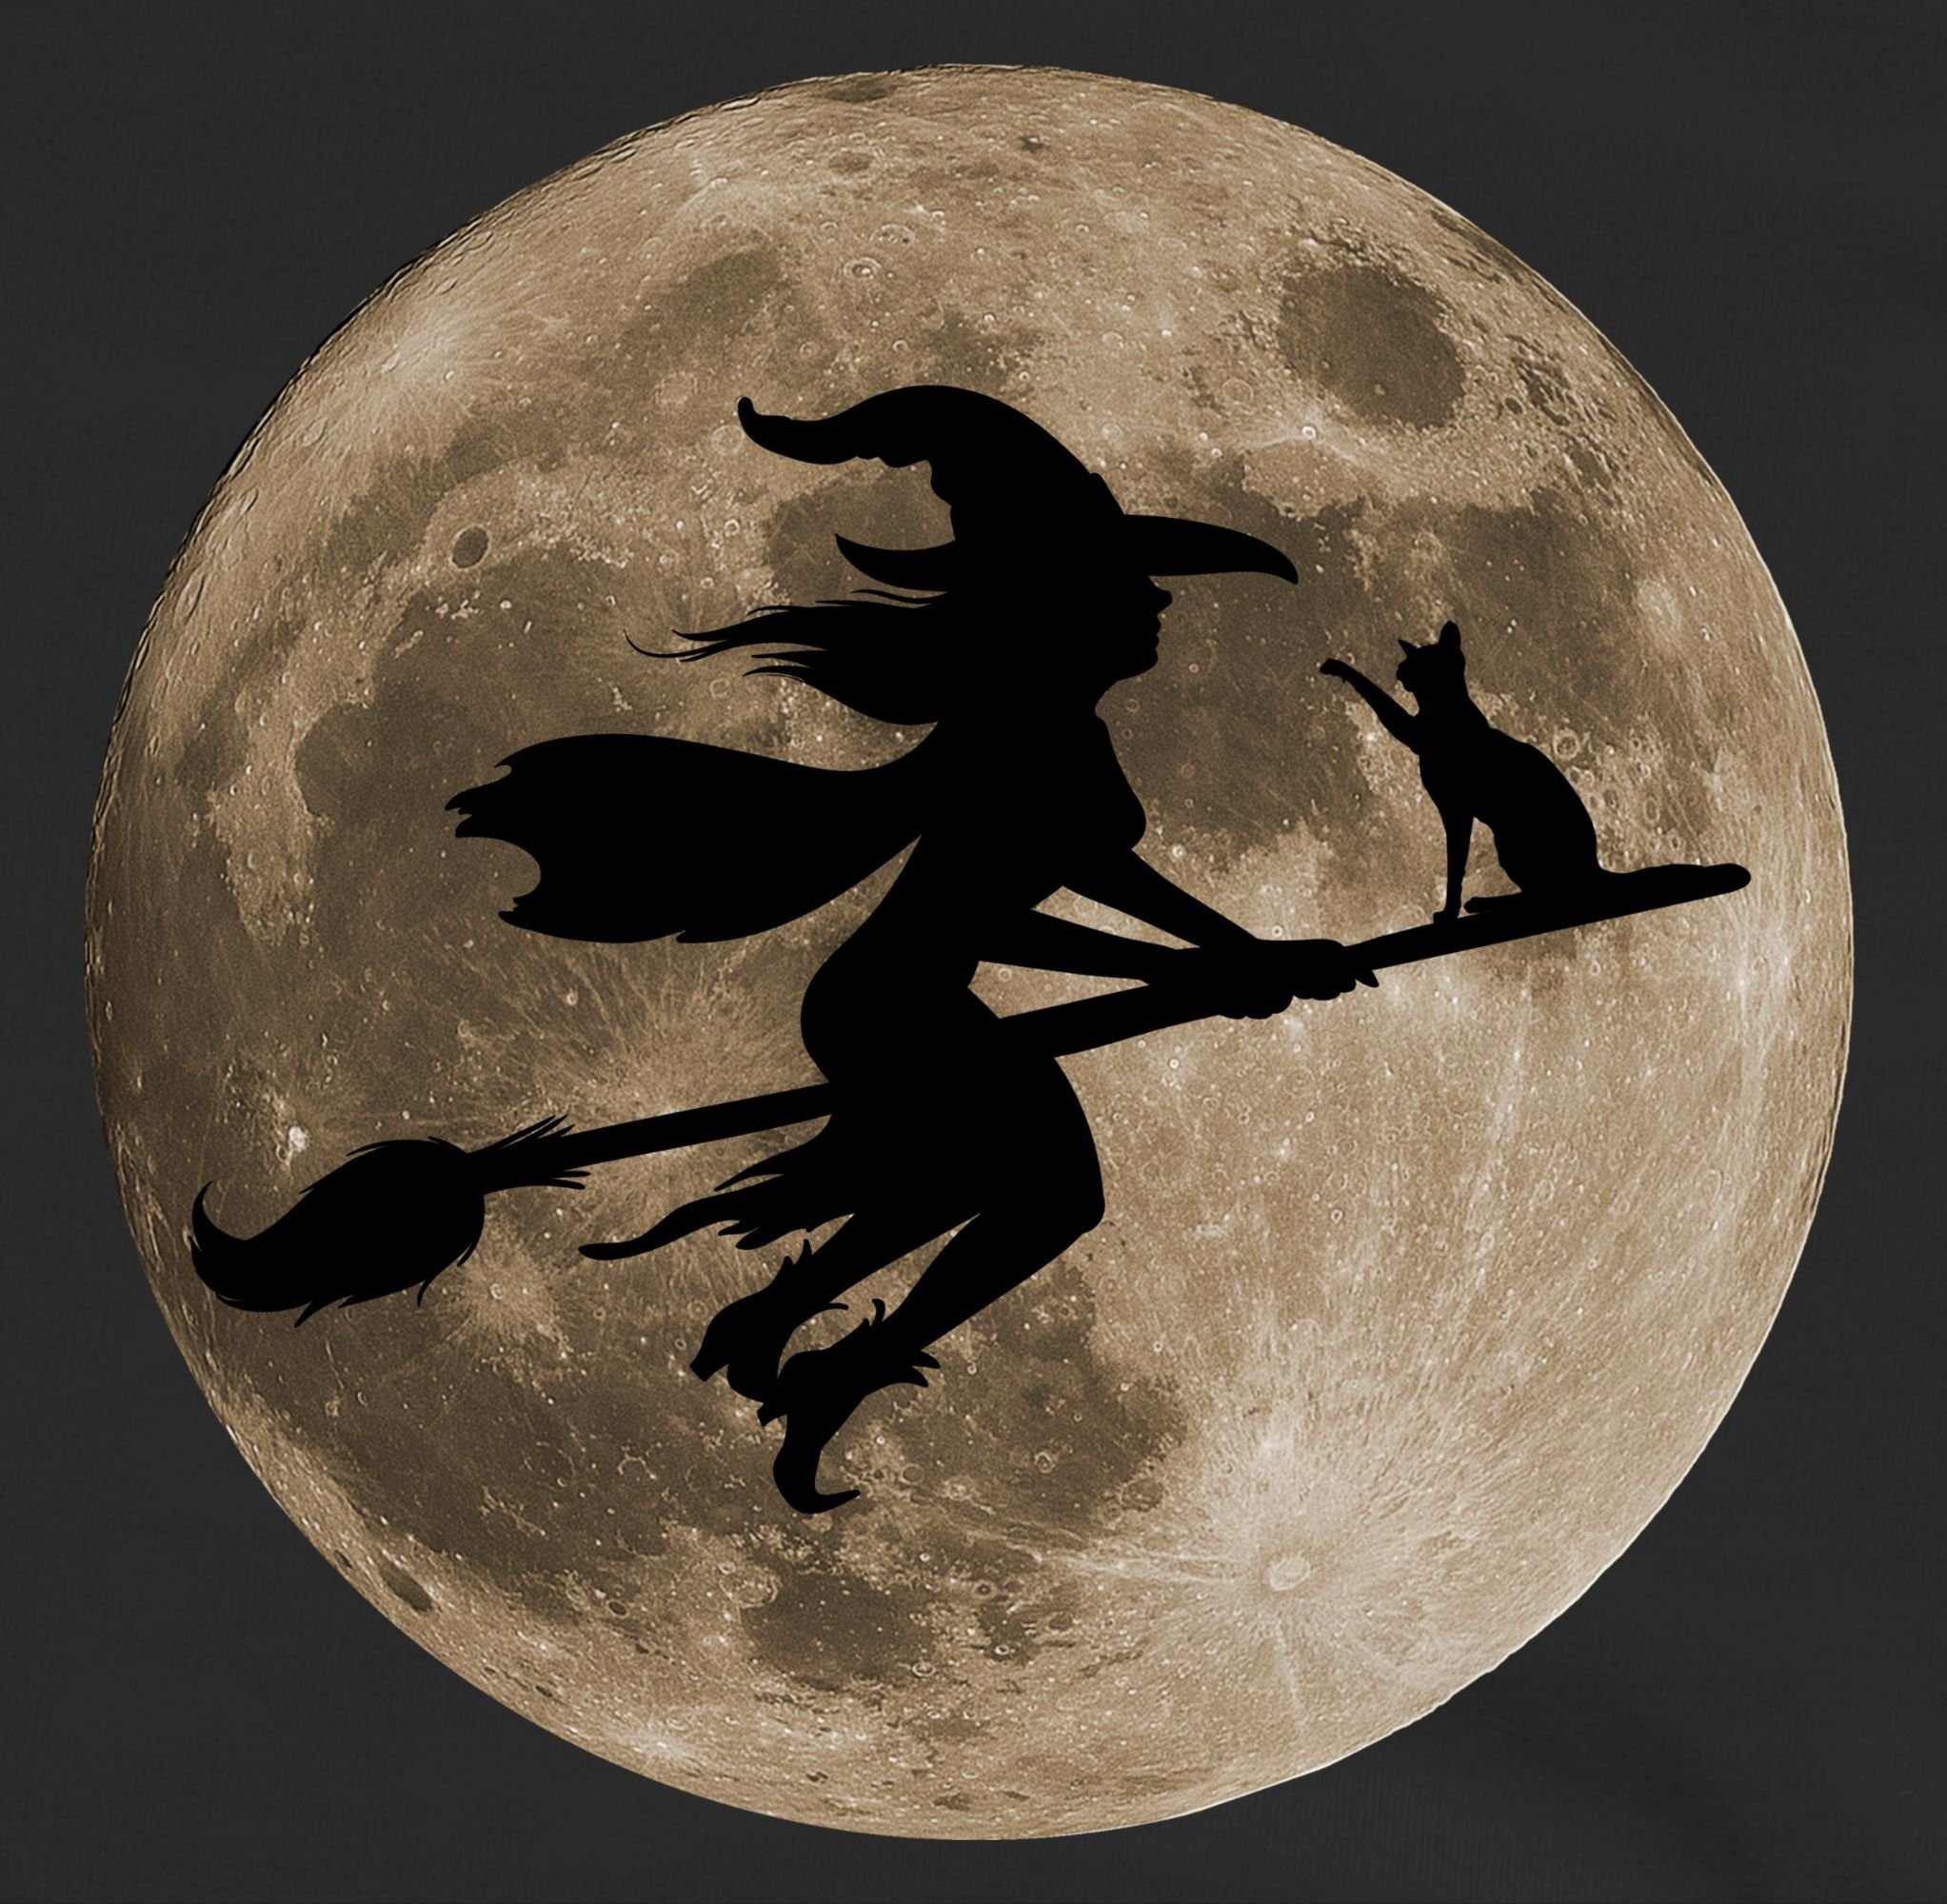 Vollmond Mond Schwarz Besen Shirtracer Witch Katze Kostüme Hexe für Sweatshirt Halloween Hexen Halloween auf Kinder 2